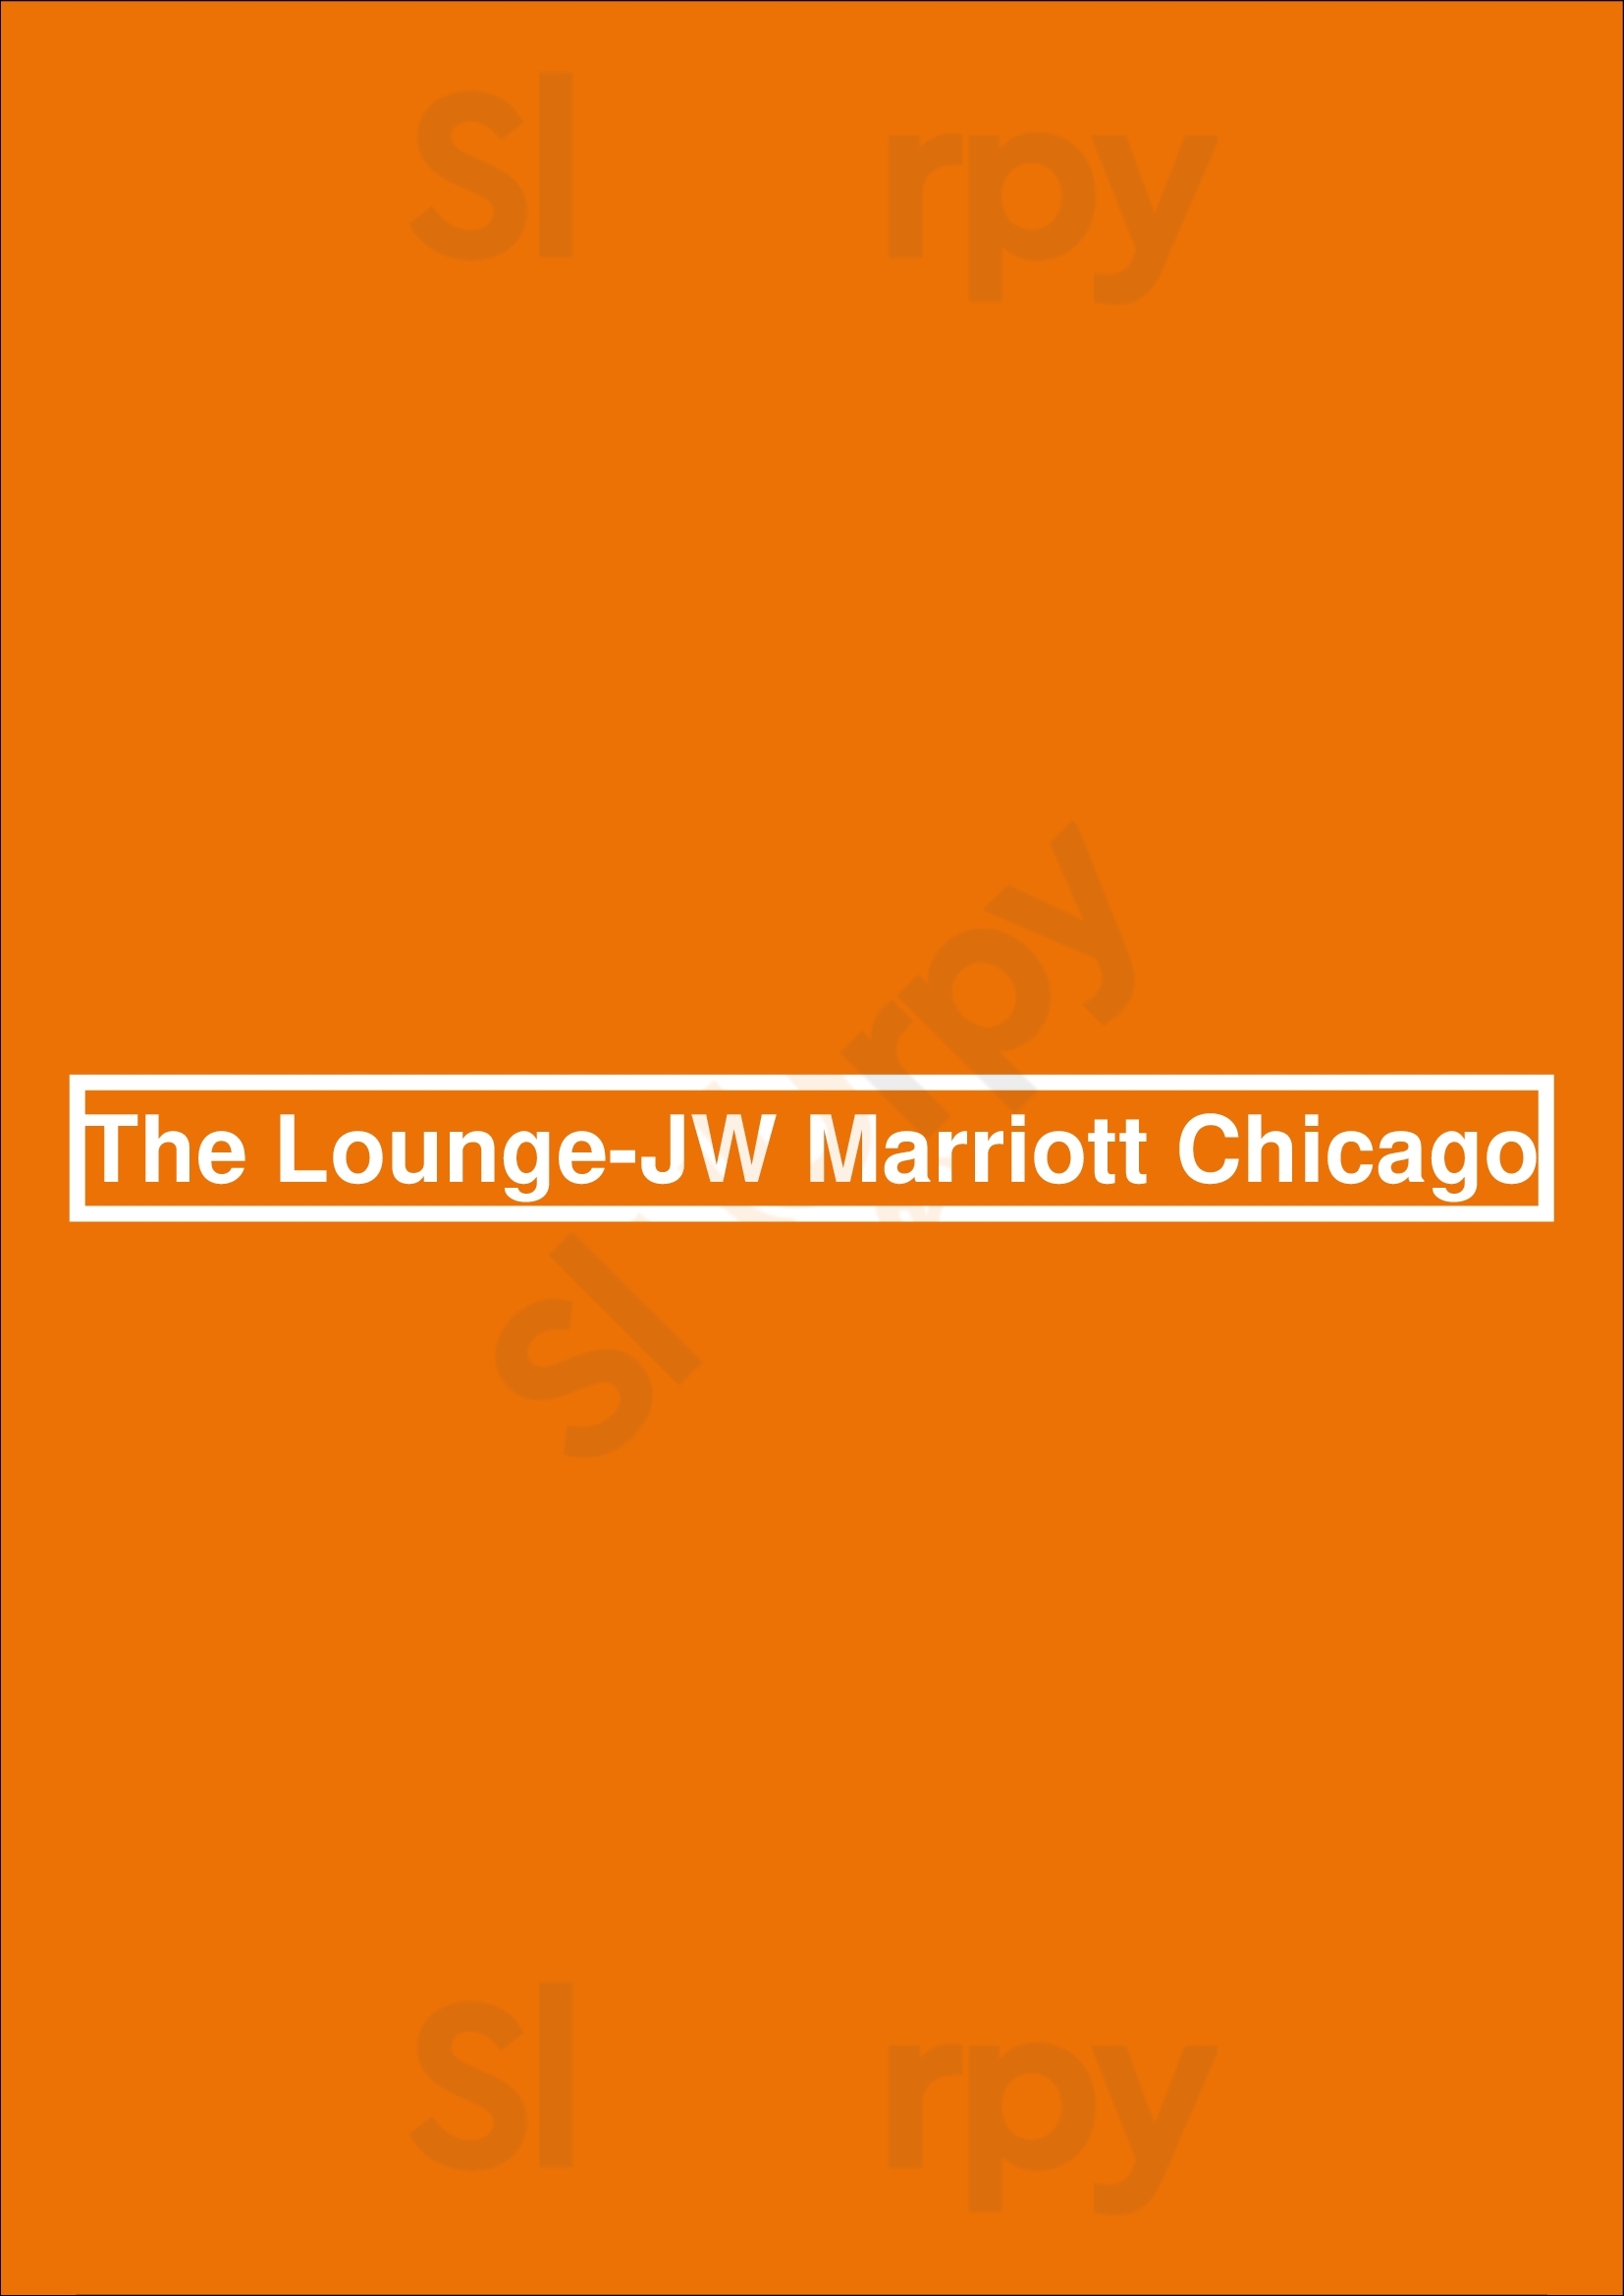 The Lounge-jw Marriott Chicago Chicago Menu - 1